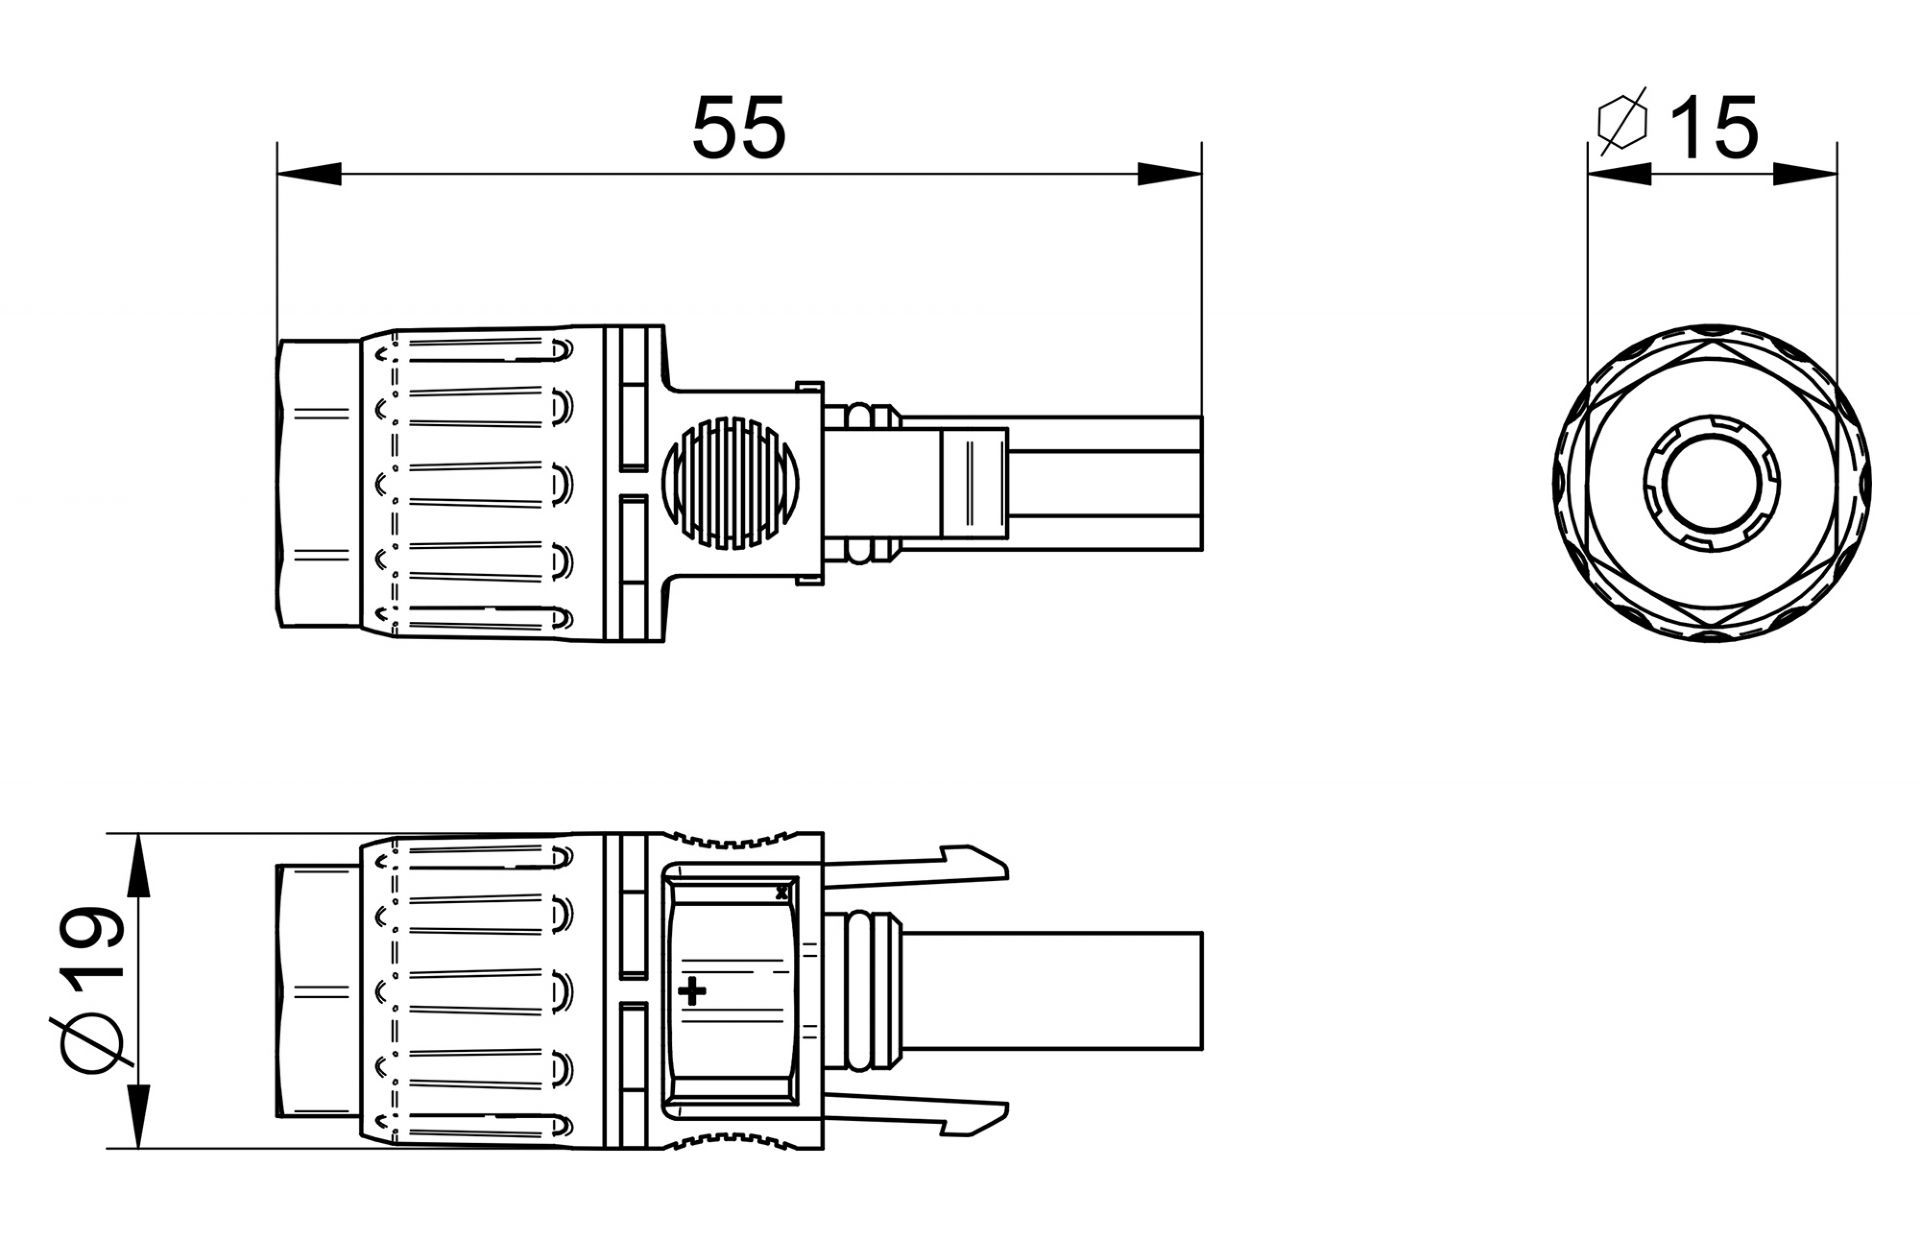 Venta/distribuidor/mayorista Conector SMD de conexión rápida. Válido para cables desde 0.2 mm² hasta 0.75 mm² rígidos o flexibles, fácilmente extraíbles. SMD 2P